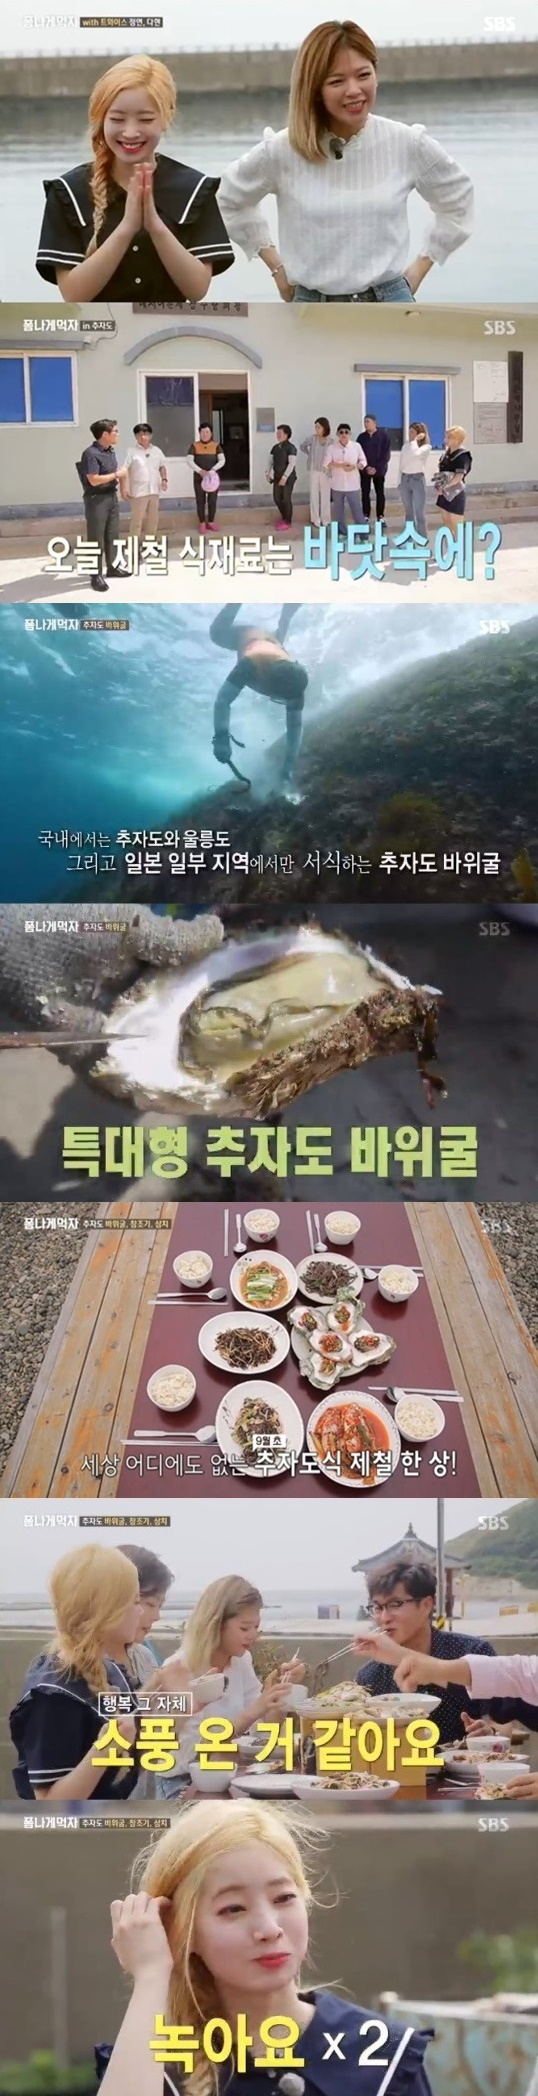 '폼나게먹자'트와이스 출격, 동시간대 예능 시청률 1위